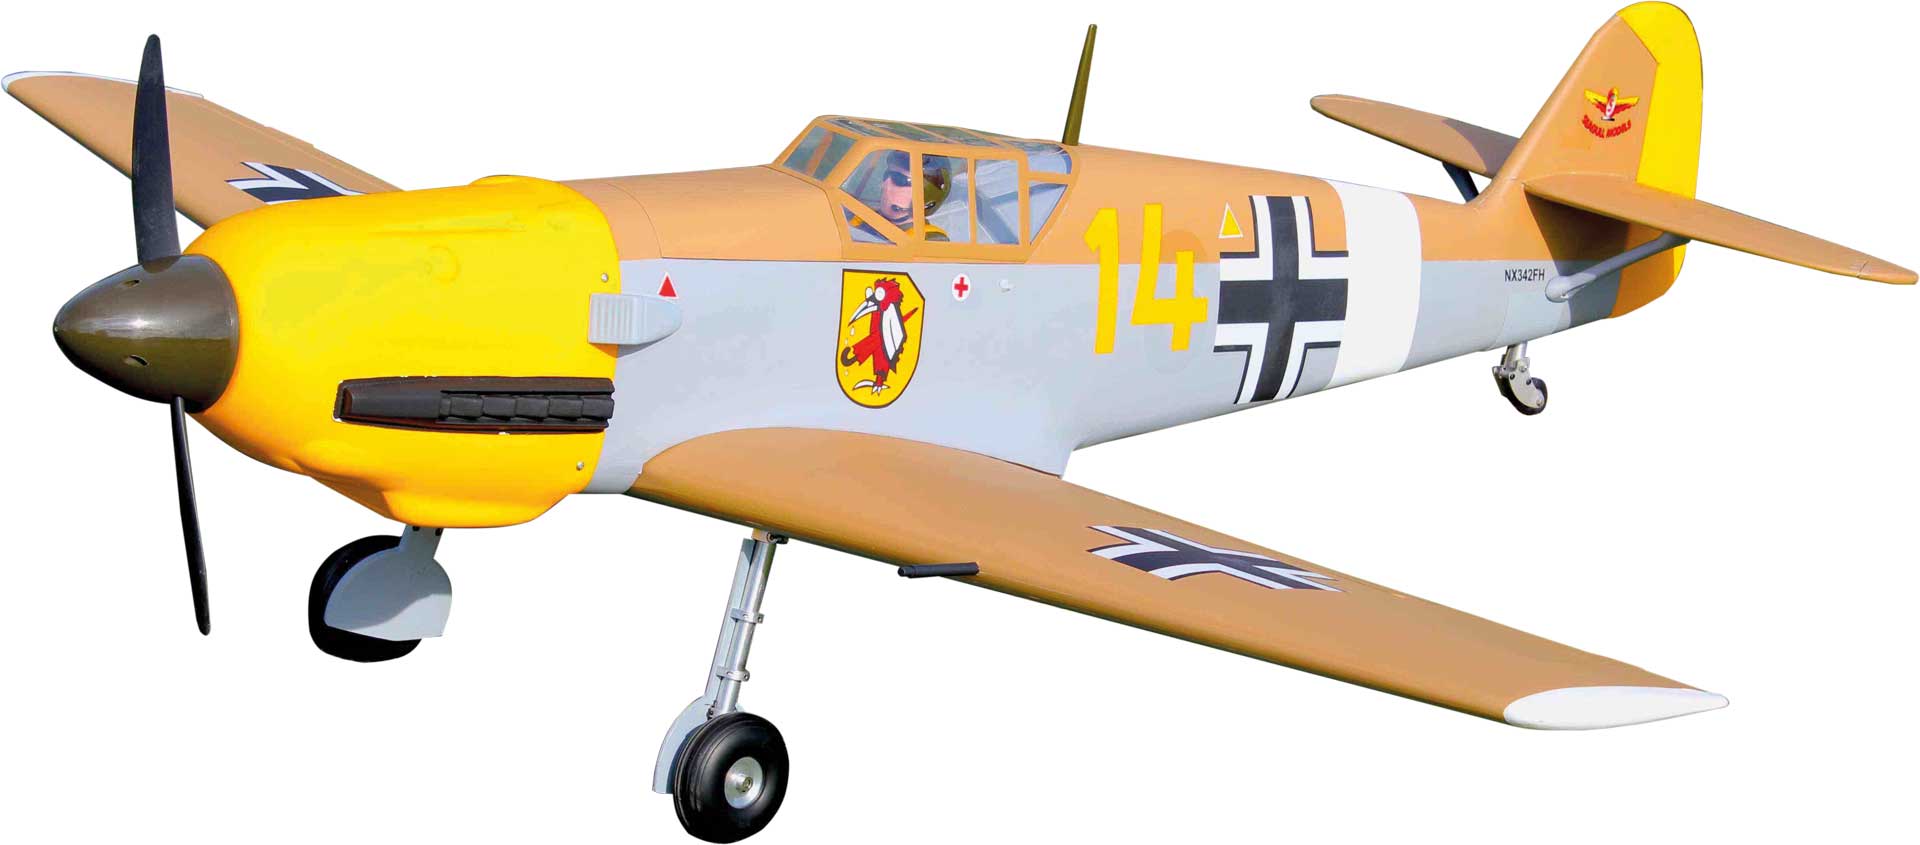 Seagull Models ( SG-Models ) Messerschmitt Bf-109 (ME-109) 63.9" WITHOUT retractable landing gear ARF, matt